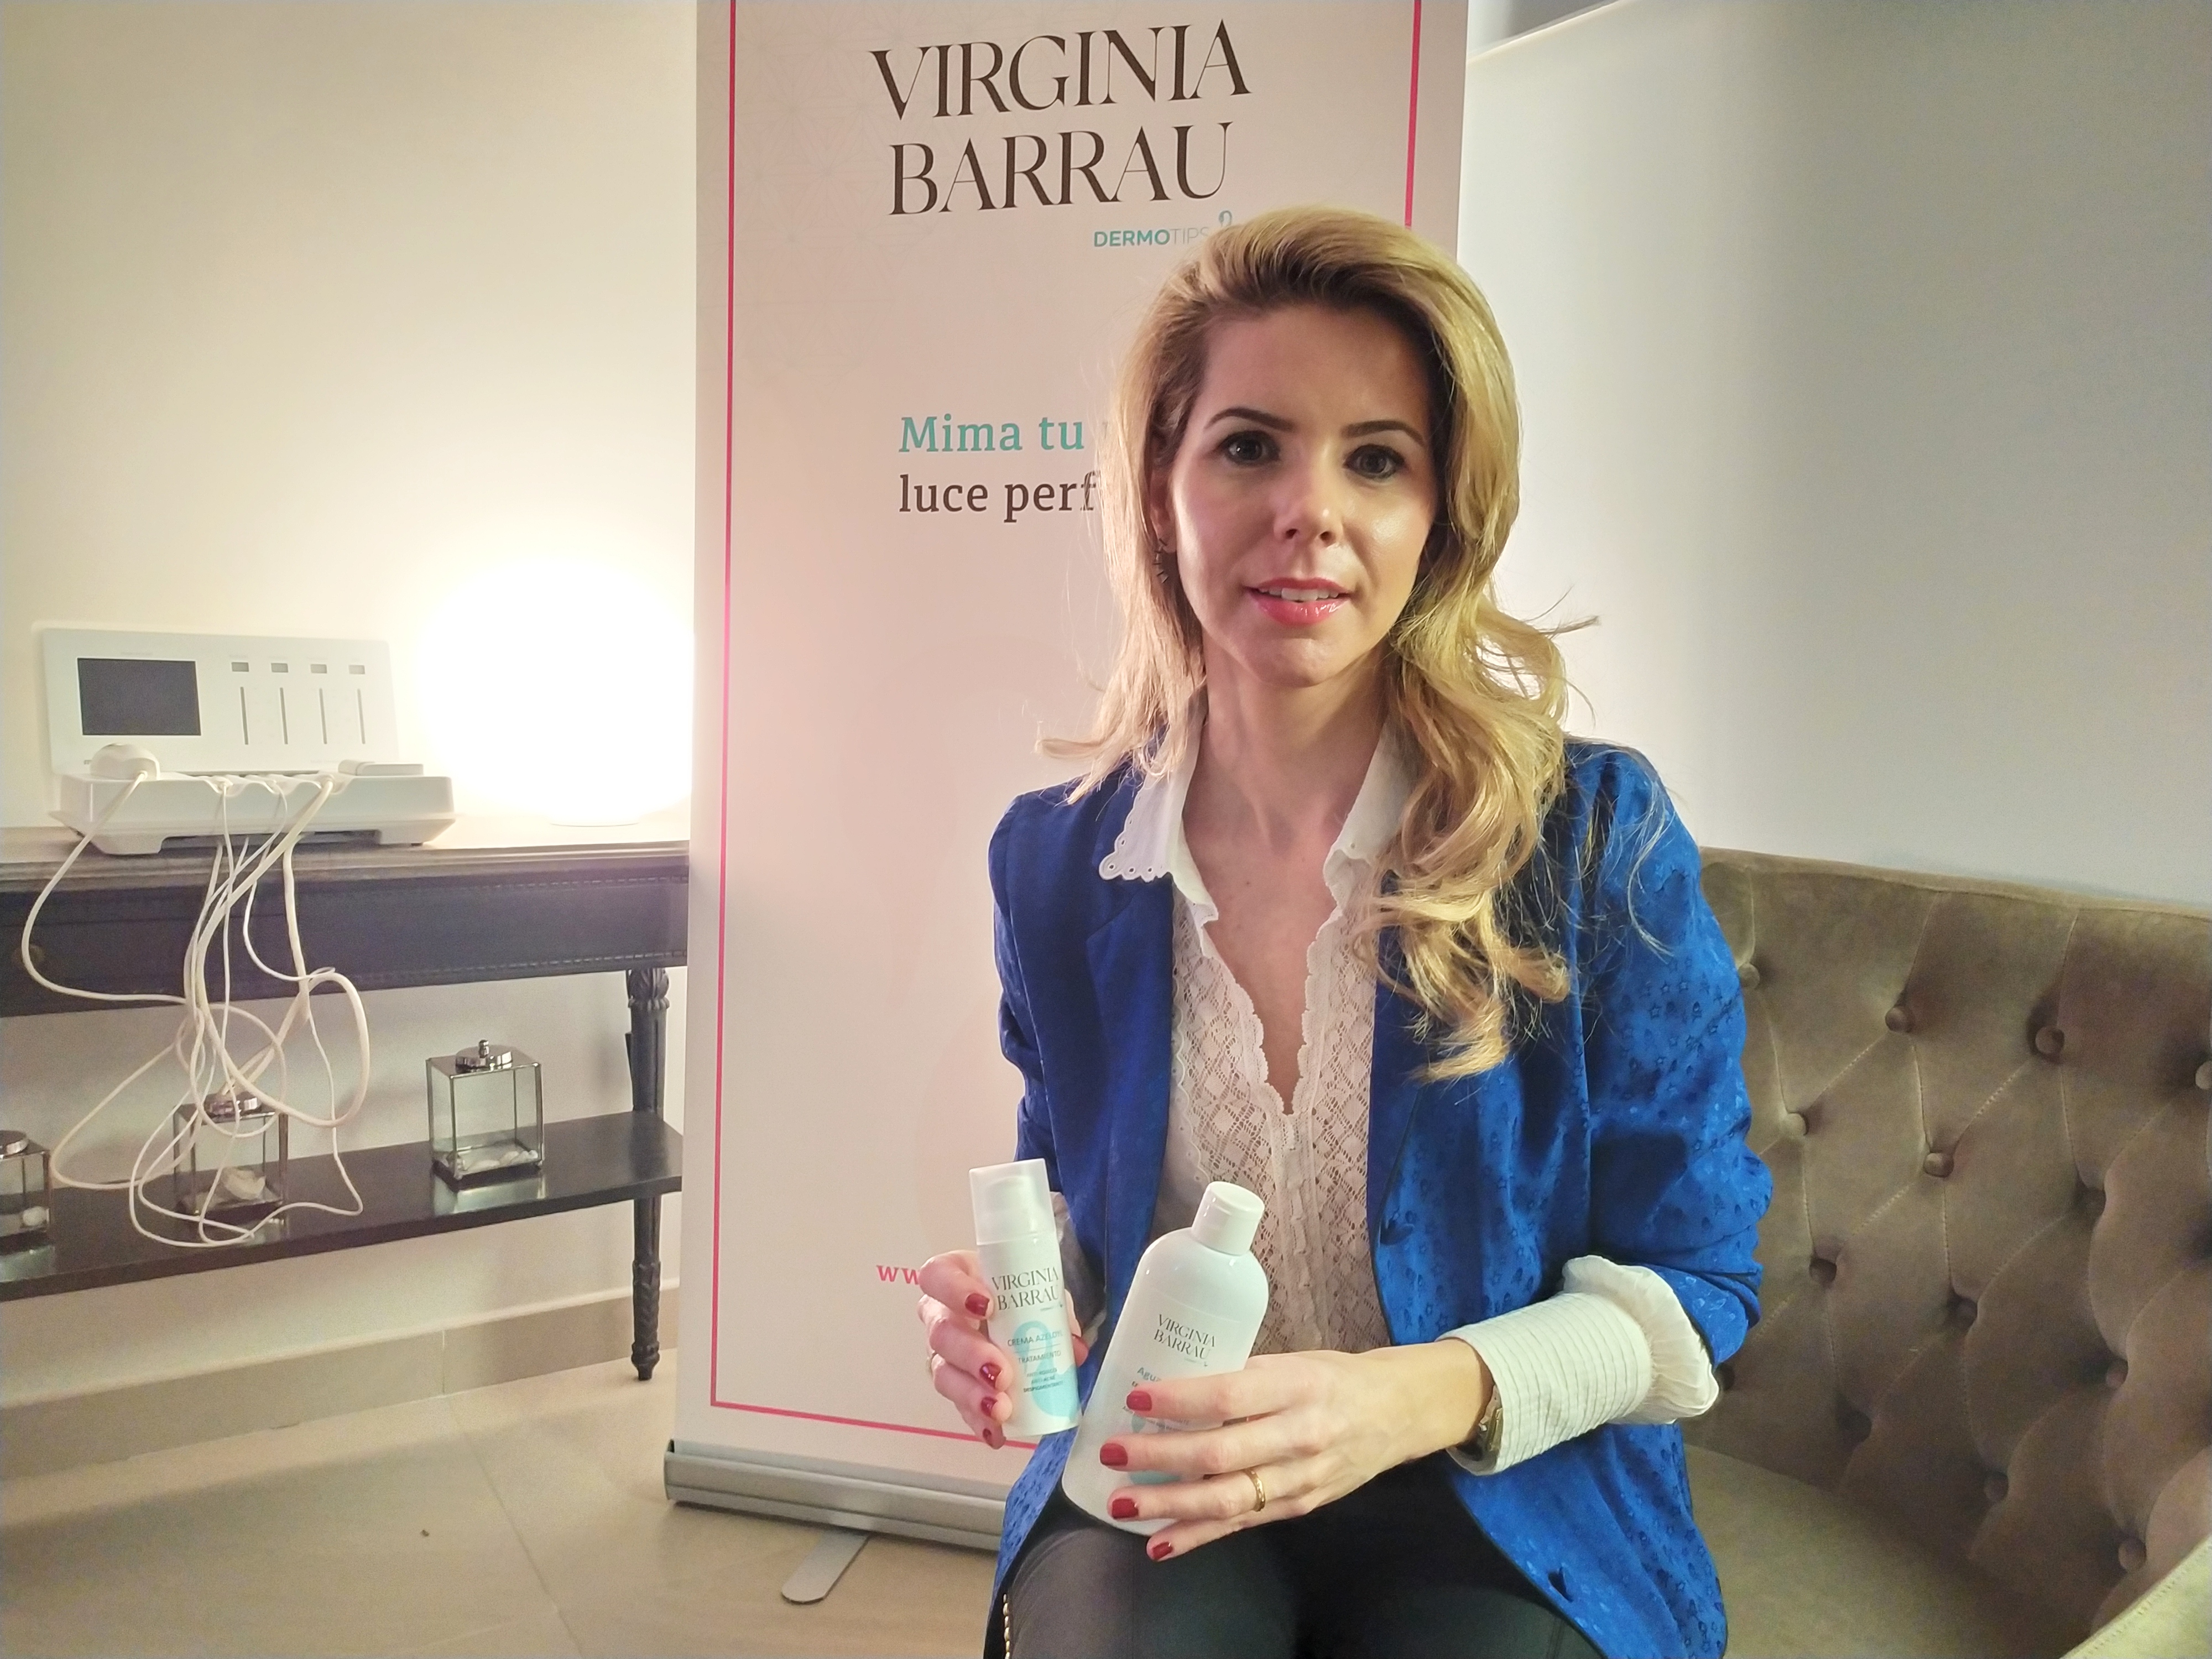 Virginia Barrau, farmacéutica comunitaria en Zaragoza, en la presentación de su linea propia de cosméticos.